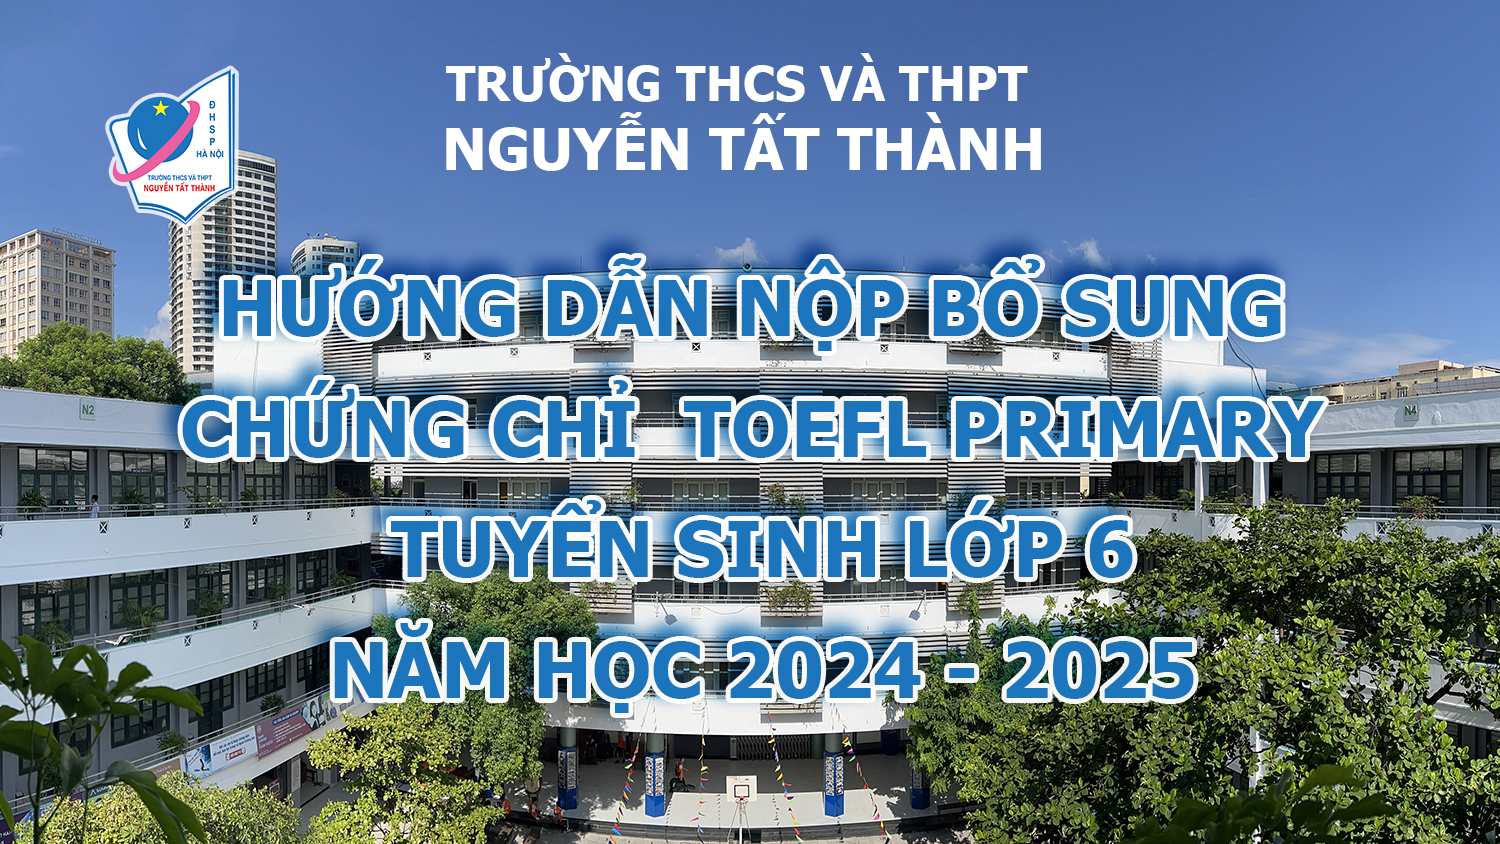 Hướng dẫn nộp bổ sung chứng chỉ Toefl Primary cho hồ sơ tuyển sinh lớp 6 năm học 2024 - 2025